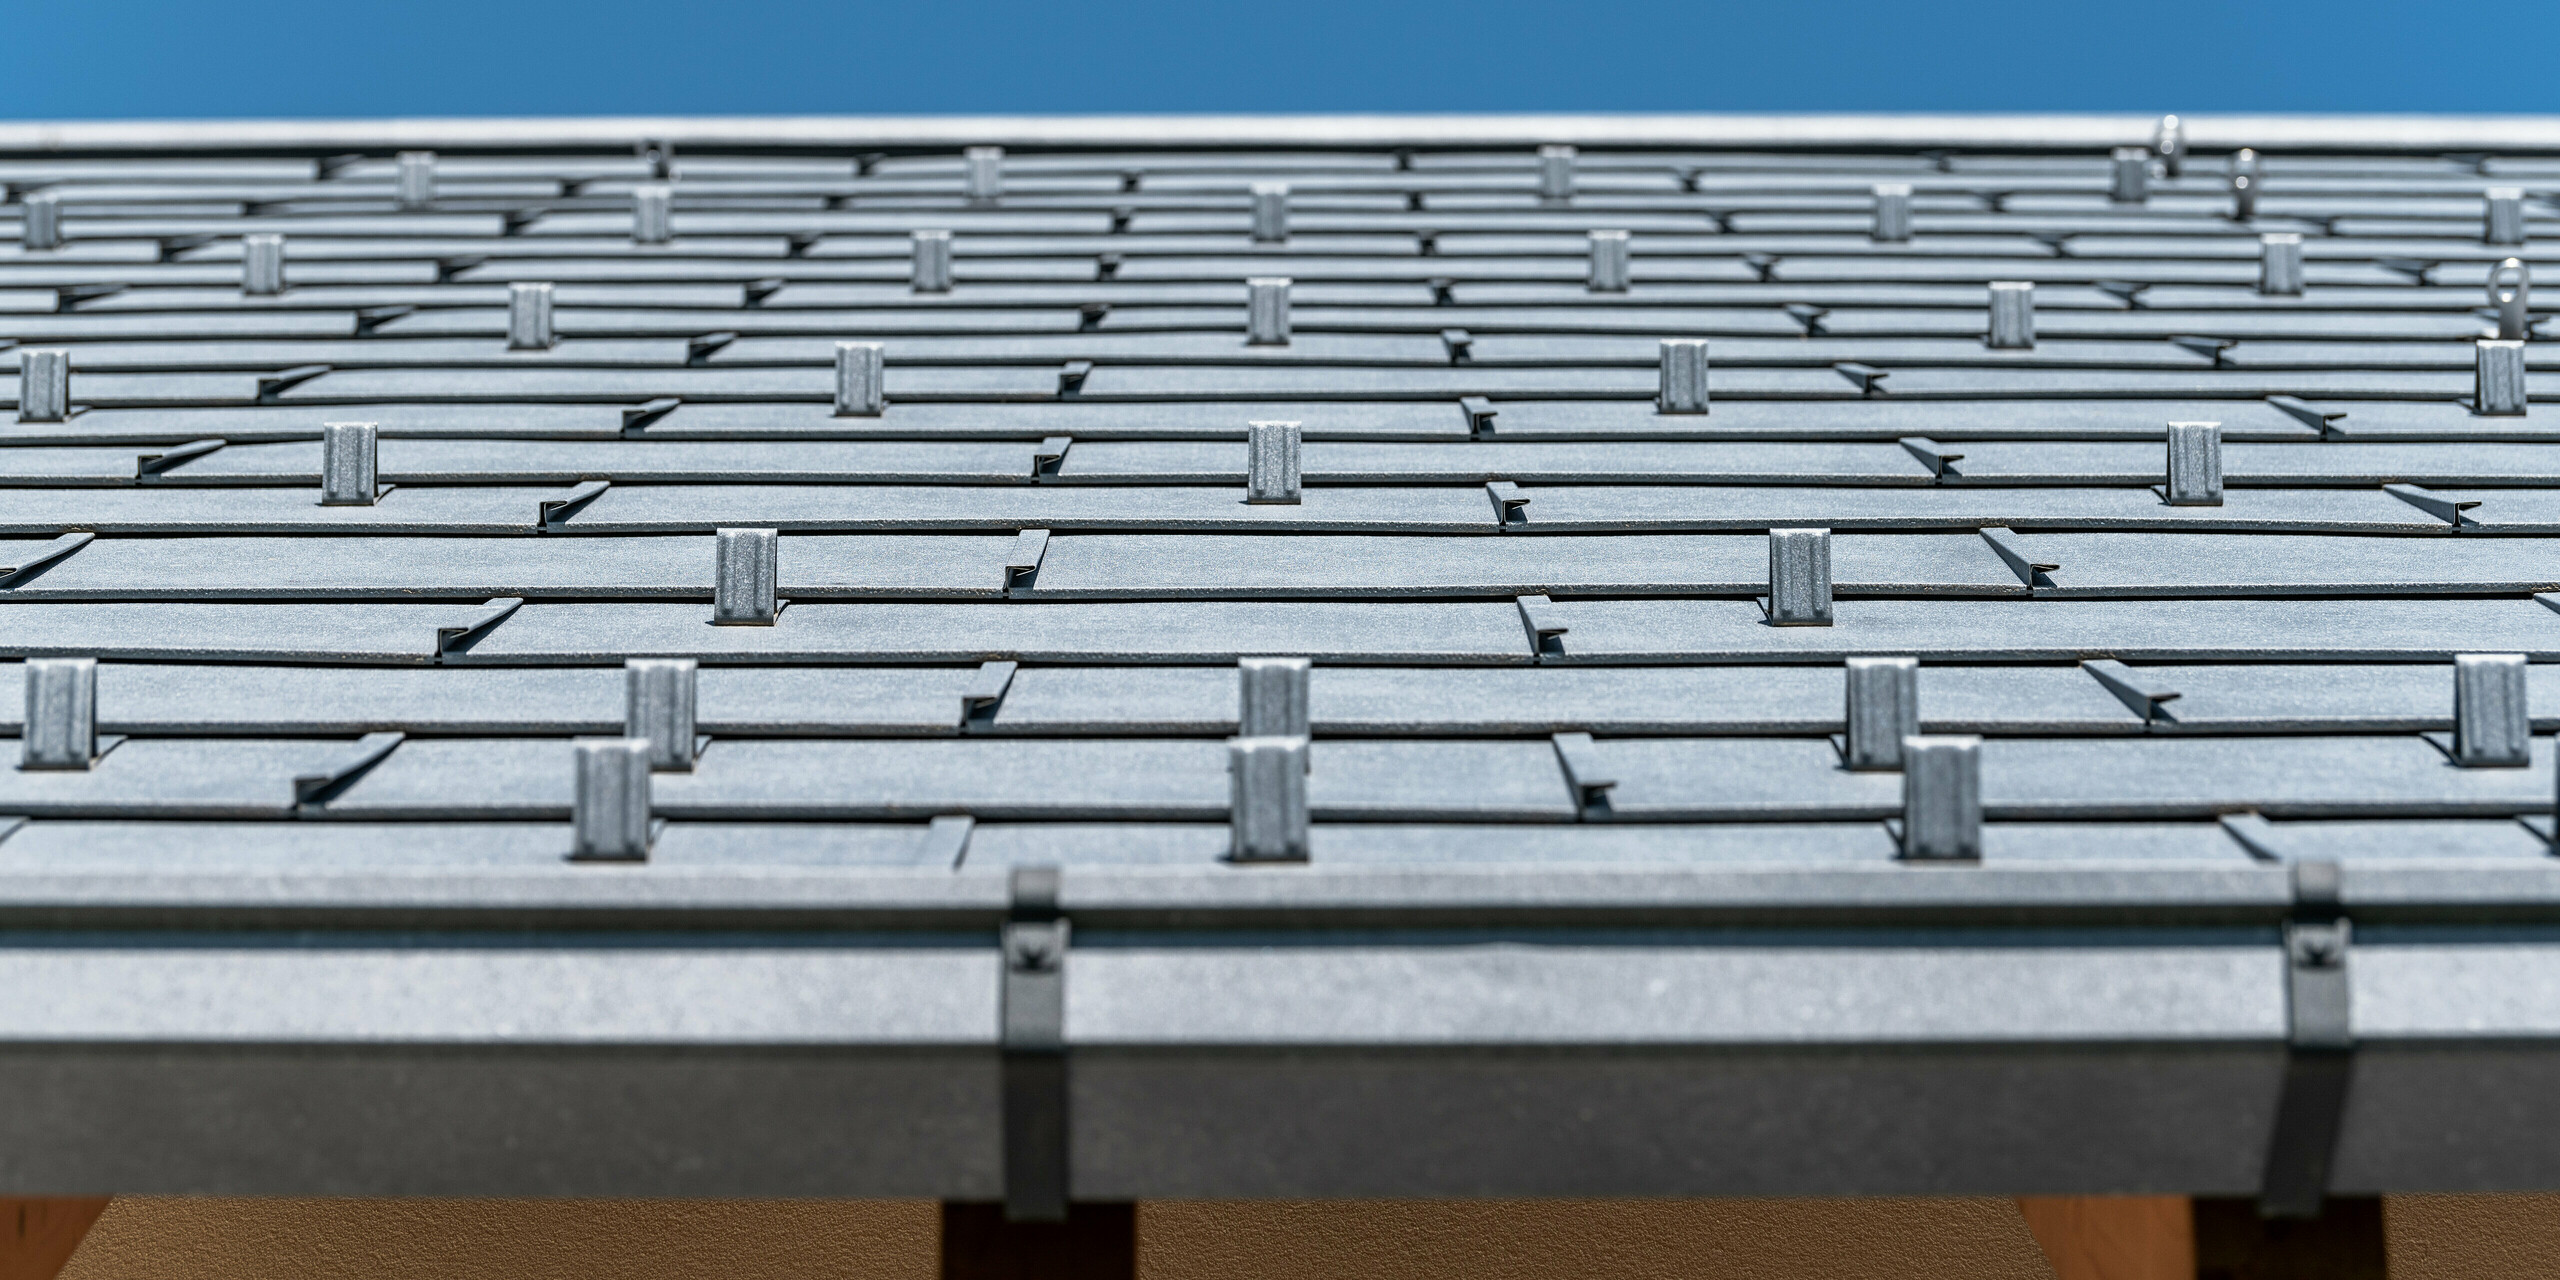 Detailansicht des PREFA Daches eingedeckt mit Dachpaneel R.16 in Farbe P.10 anthrazit. Das Bild zeigt präzise verarbeitete Aluminium-Dachplatten. Die Aufnahme hebt die markante Struktur und das moderne Design des Daches hervor, das im Kontrast zum strahlend blauen Himmel steht und die innovative und langlebige Dachlösung von PREFA unterstreicht.